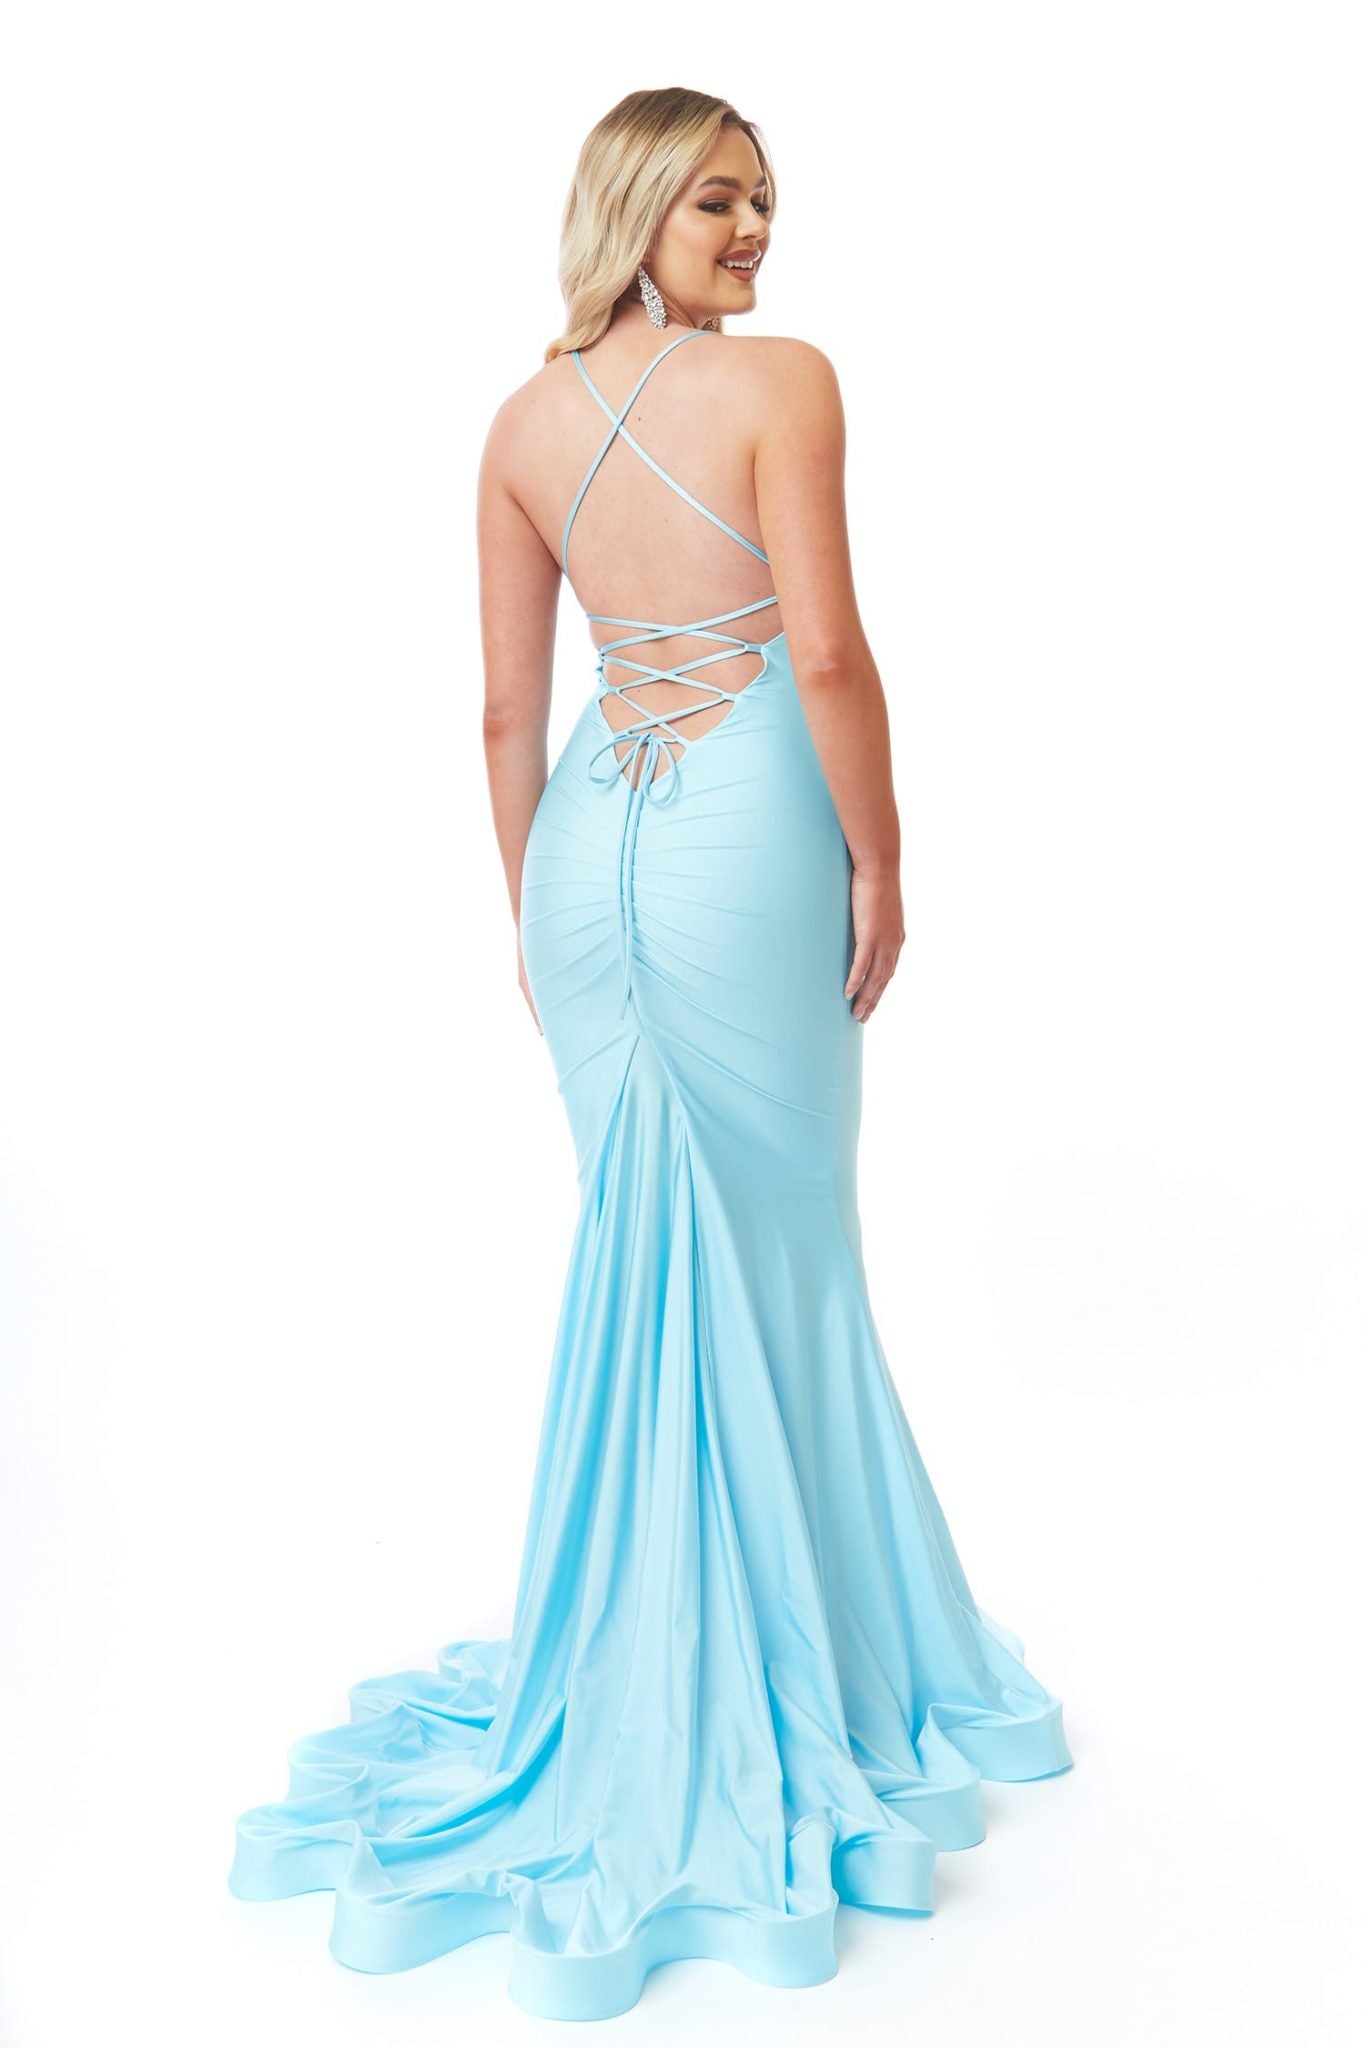 atria 6557 light blue prom dress